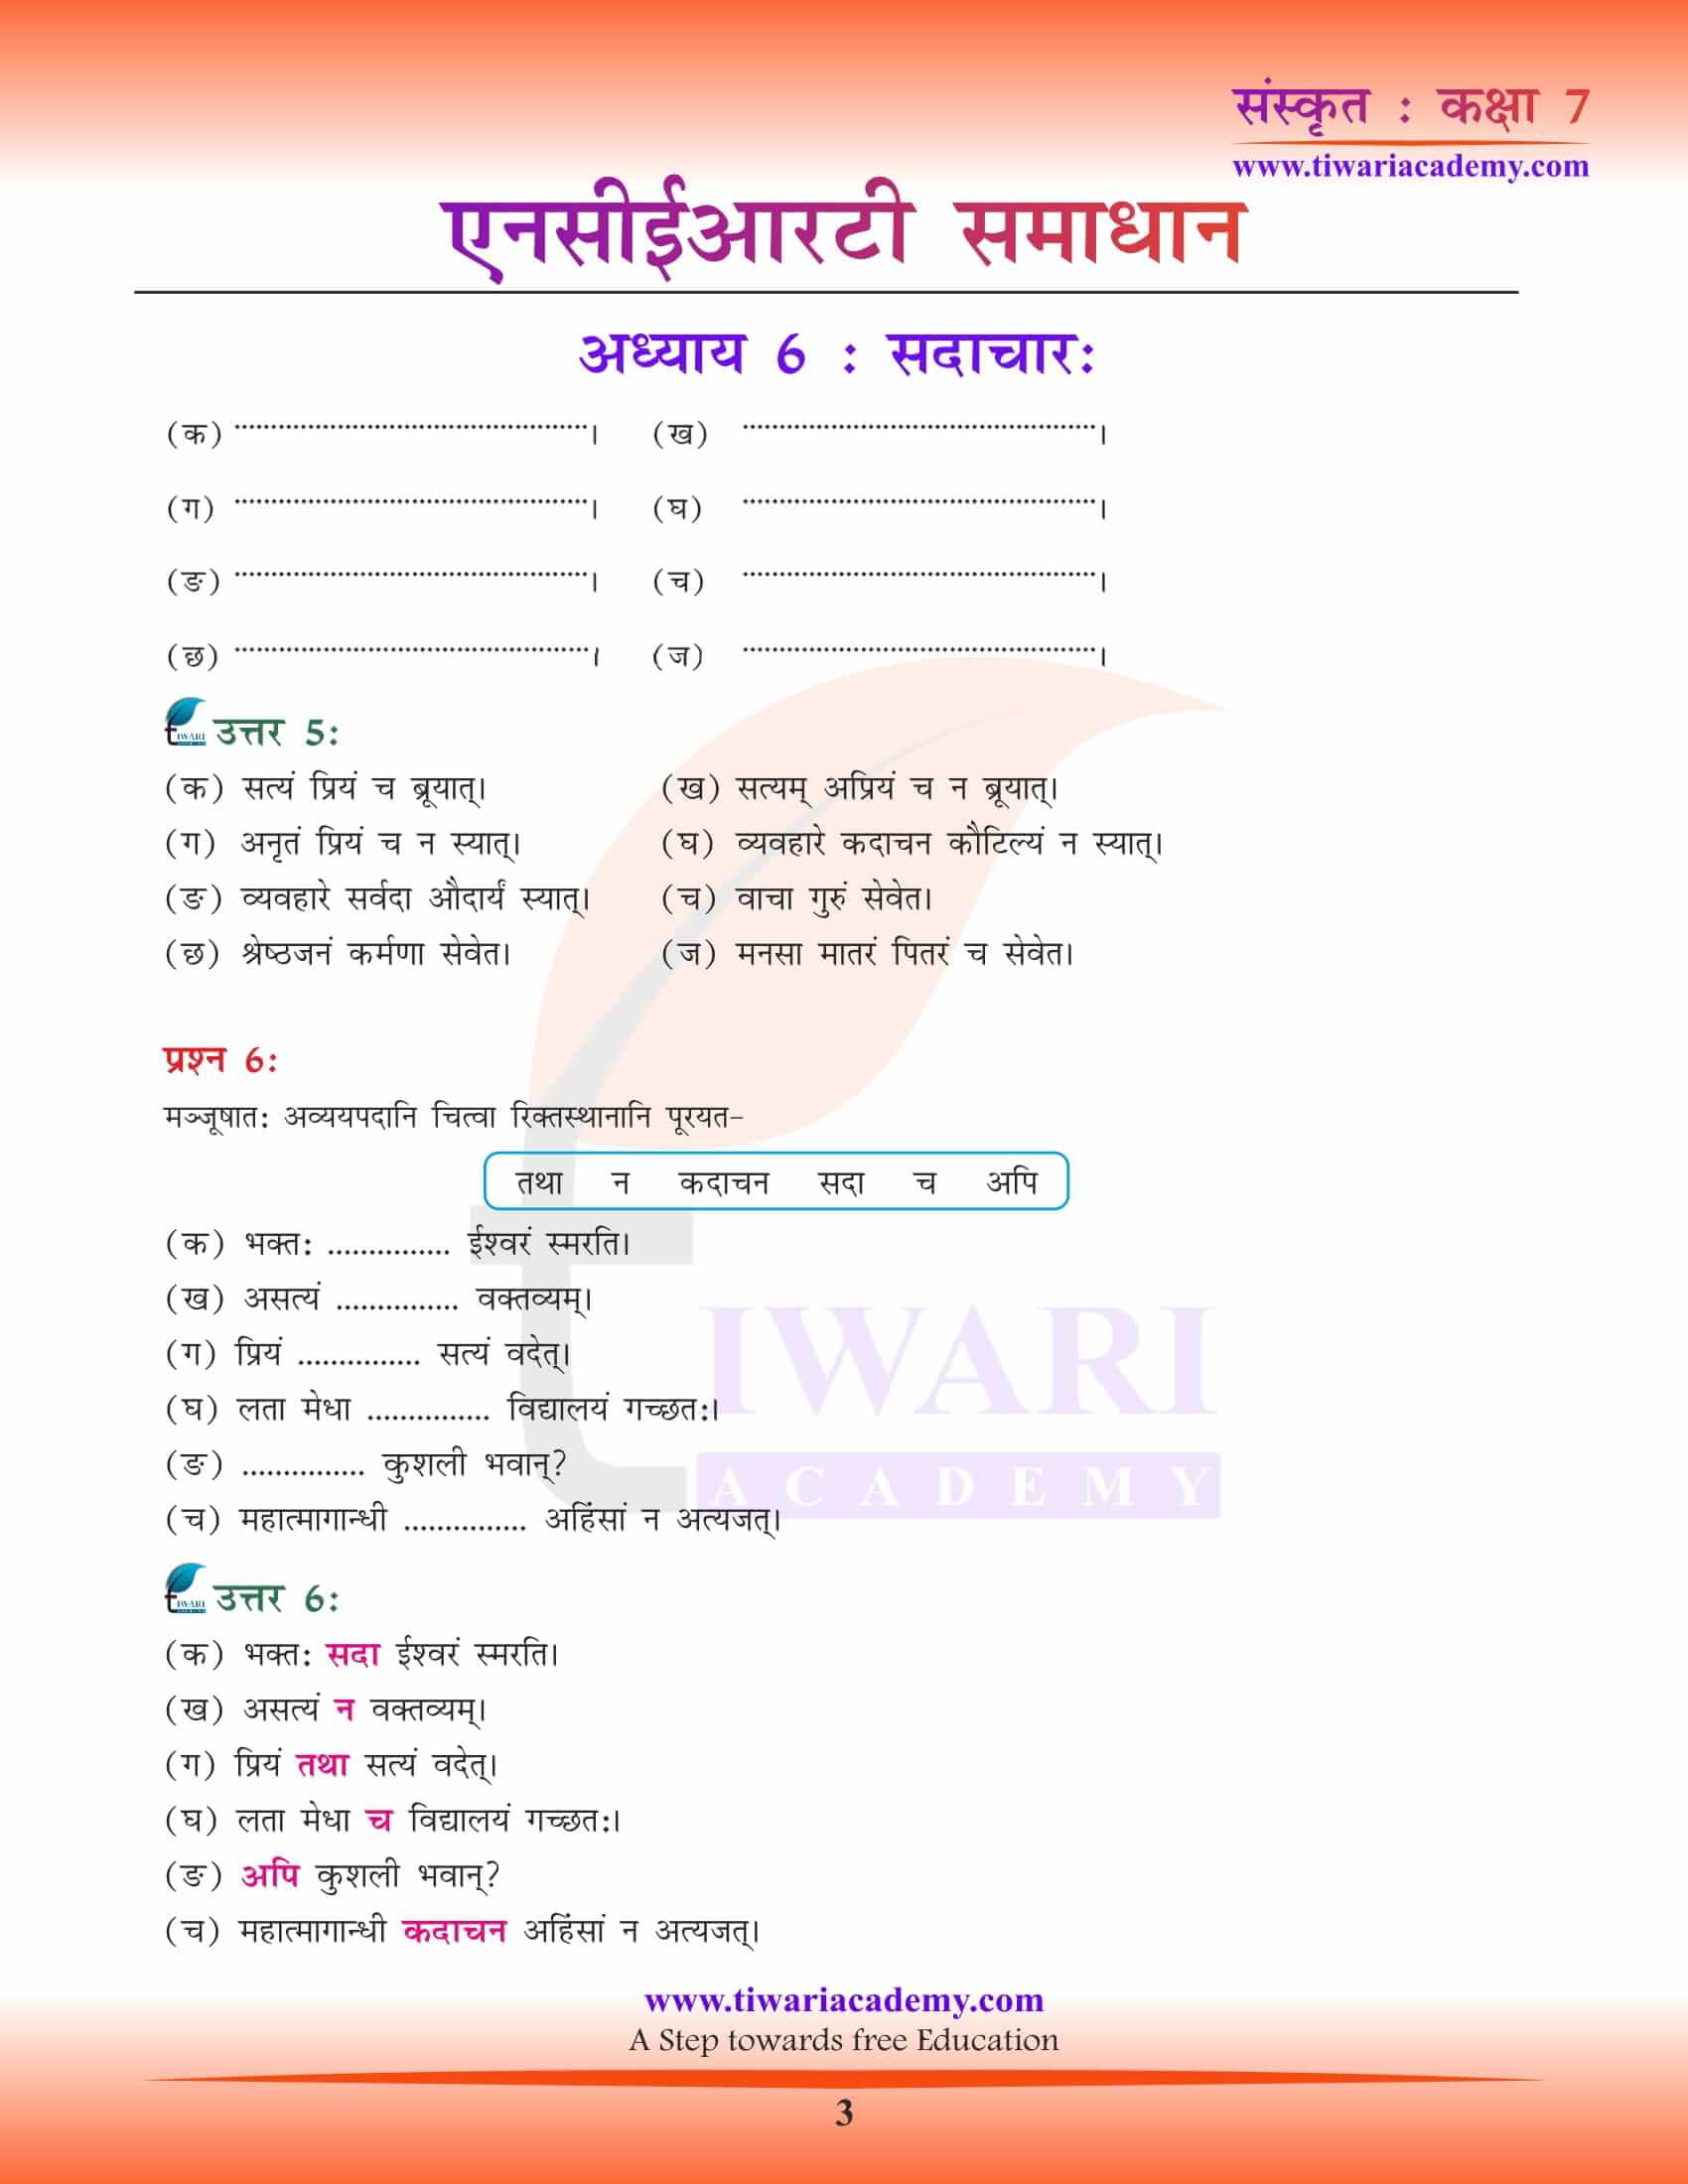 NCERT Solutions for Class 7 Sanskrit Chapter 6 free